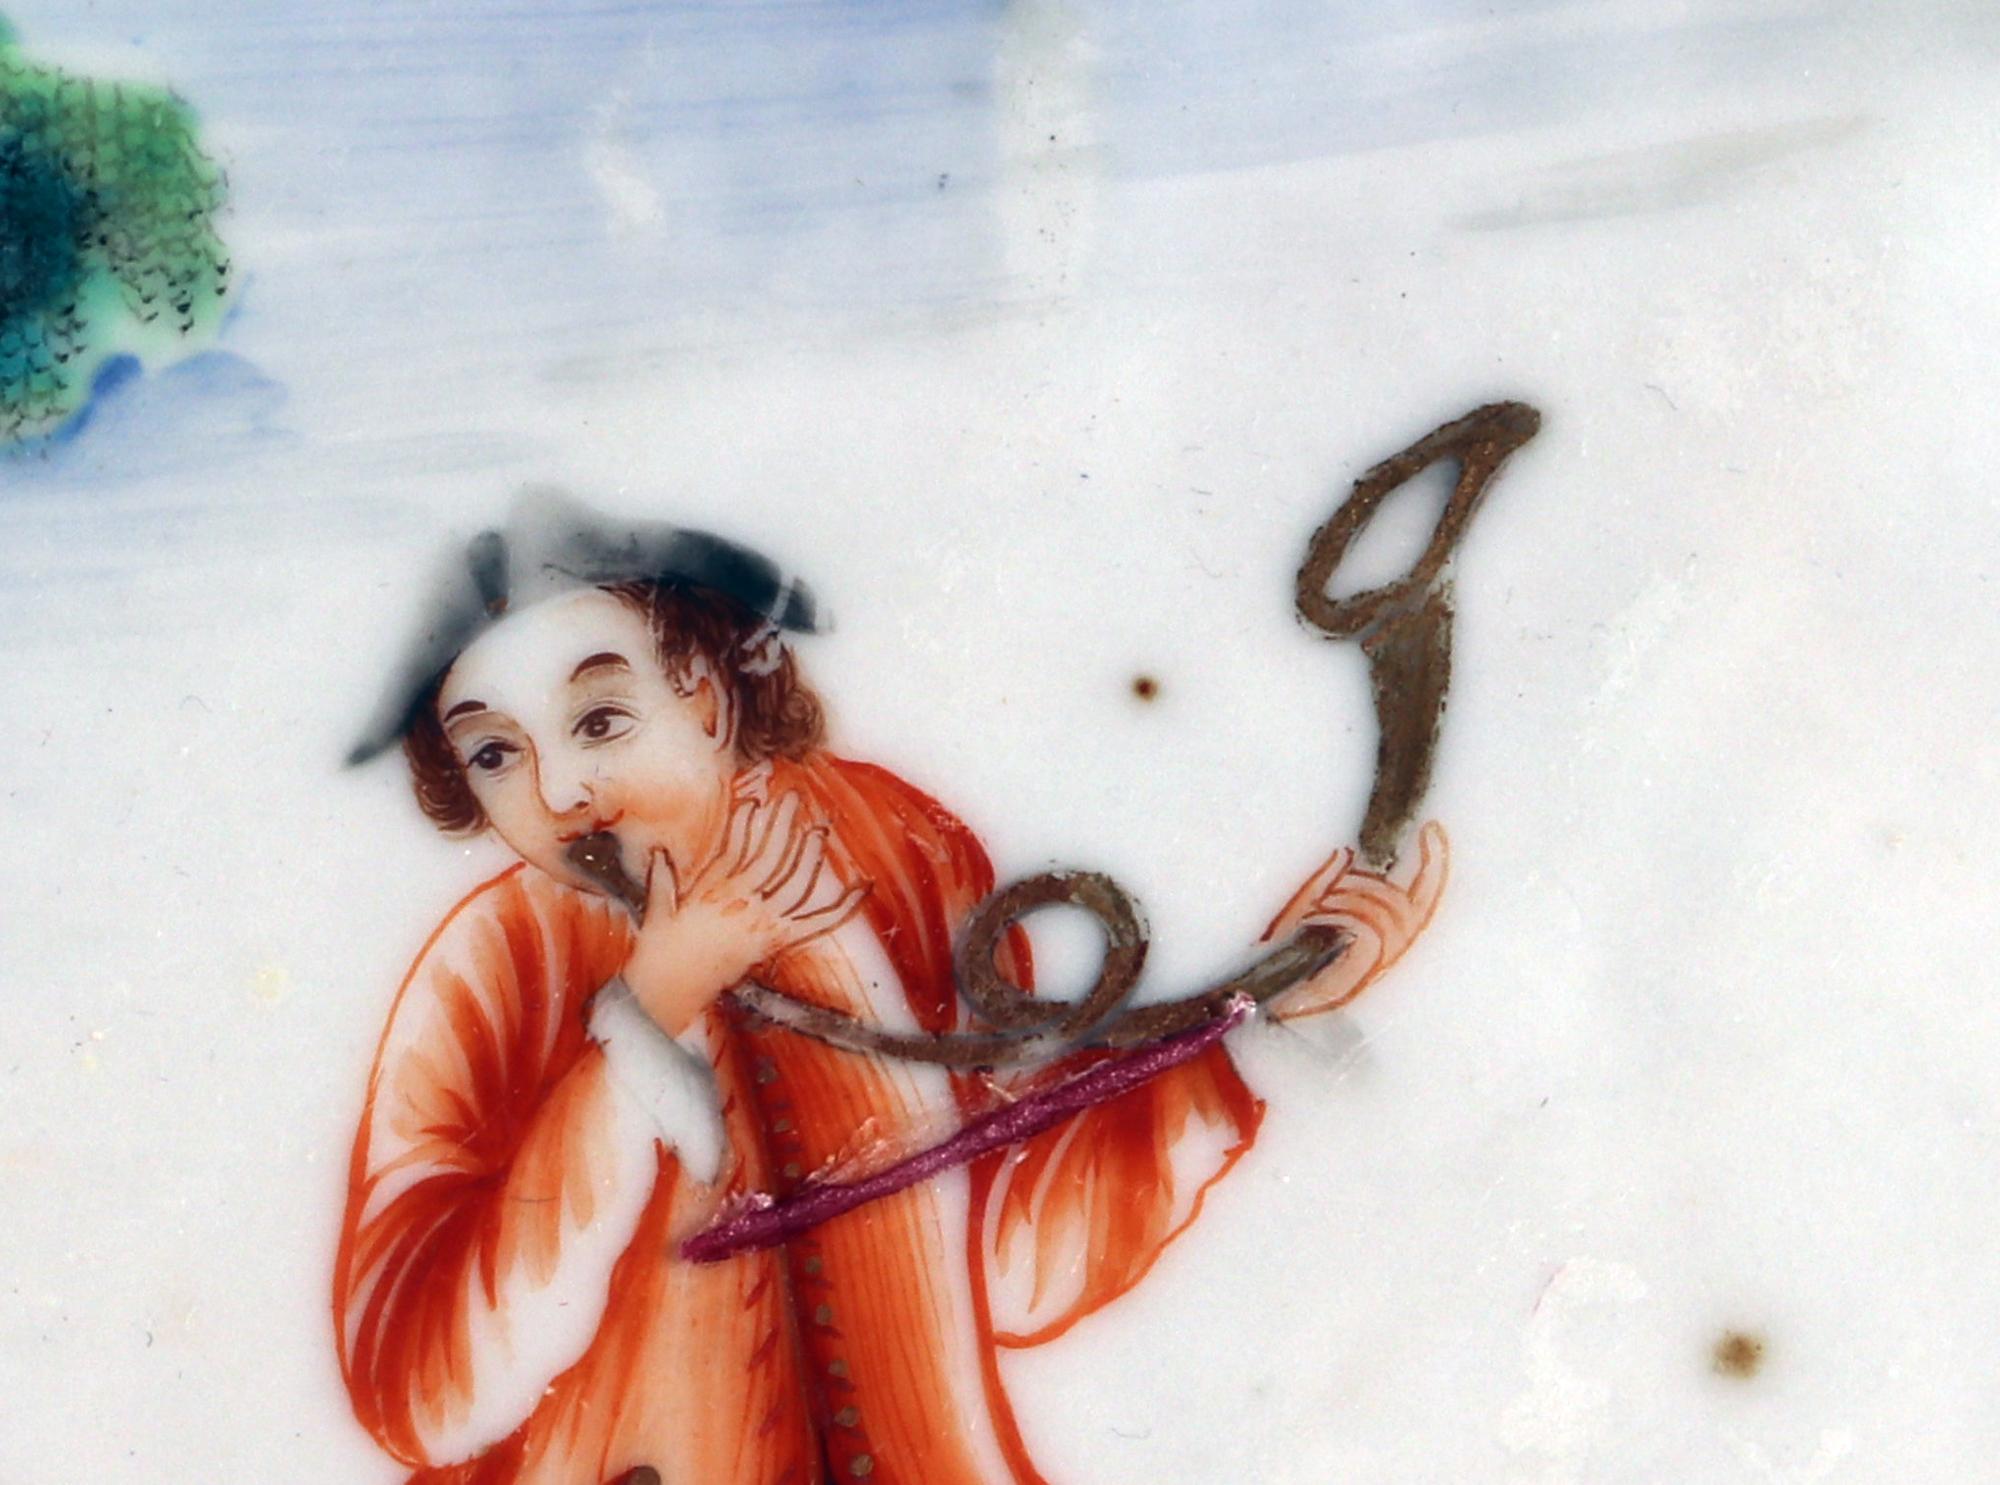 Plat ovale en porcelaine d'exportation chinoise à sujet européen,
Figures européennes de chasseurs et de chiens de chasse,
Circa 1765-85

Le plat en porcelaine d'exportation chinoise est peint en émaux 